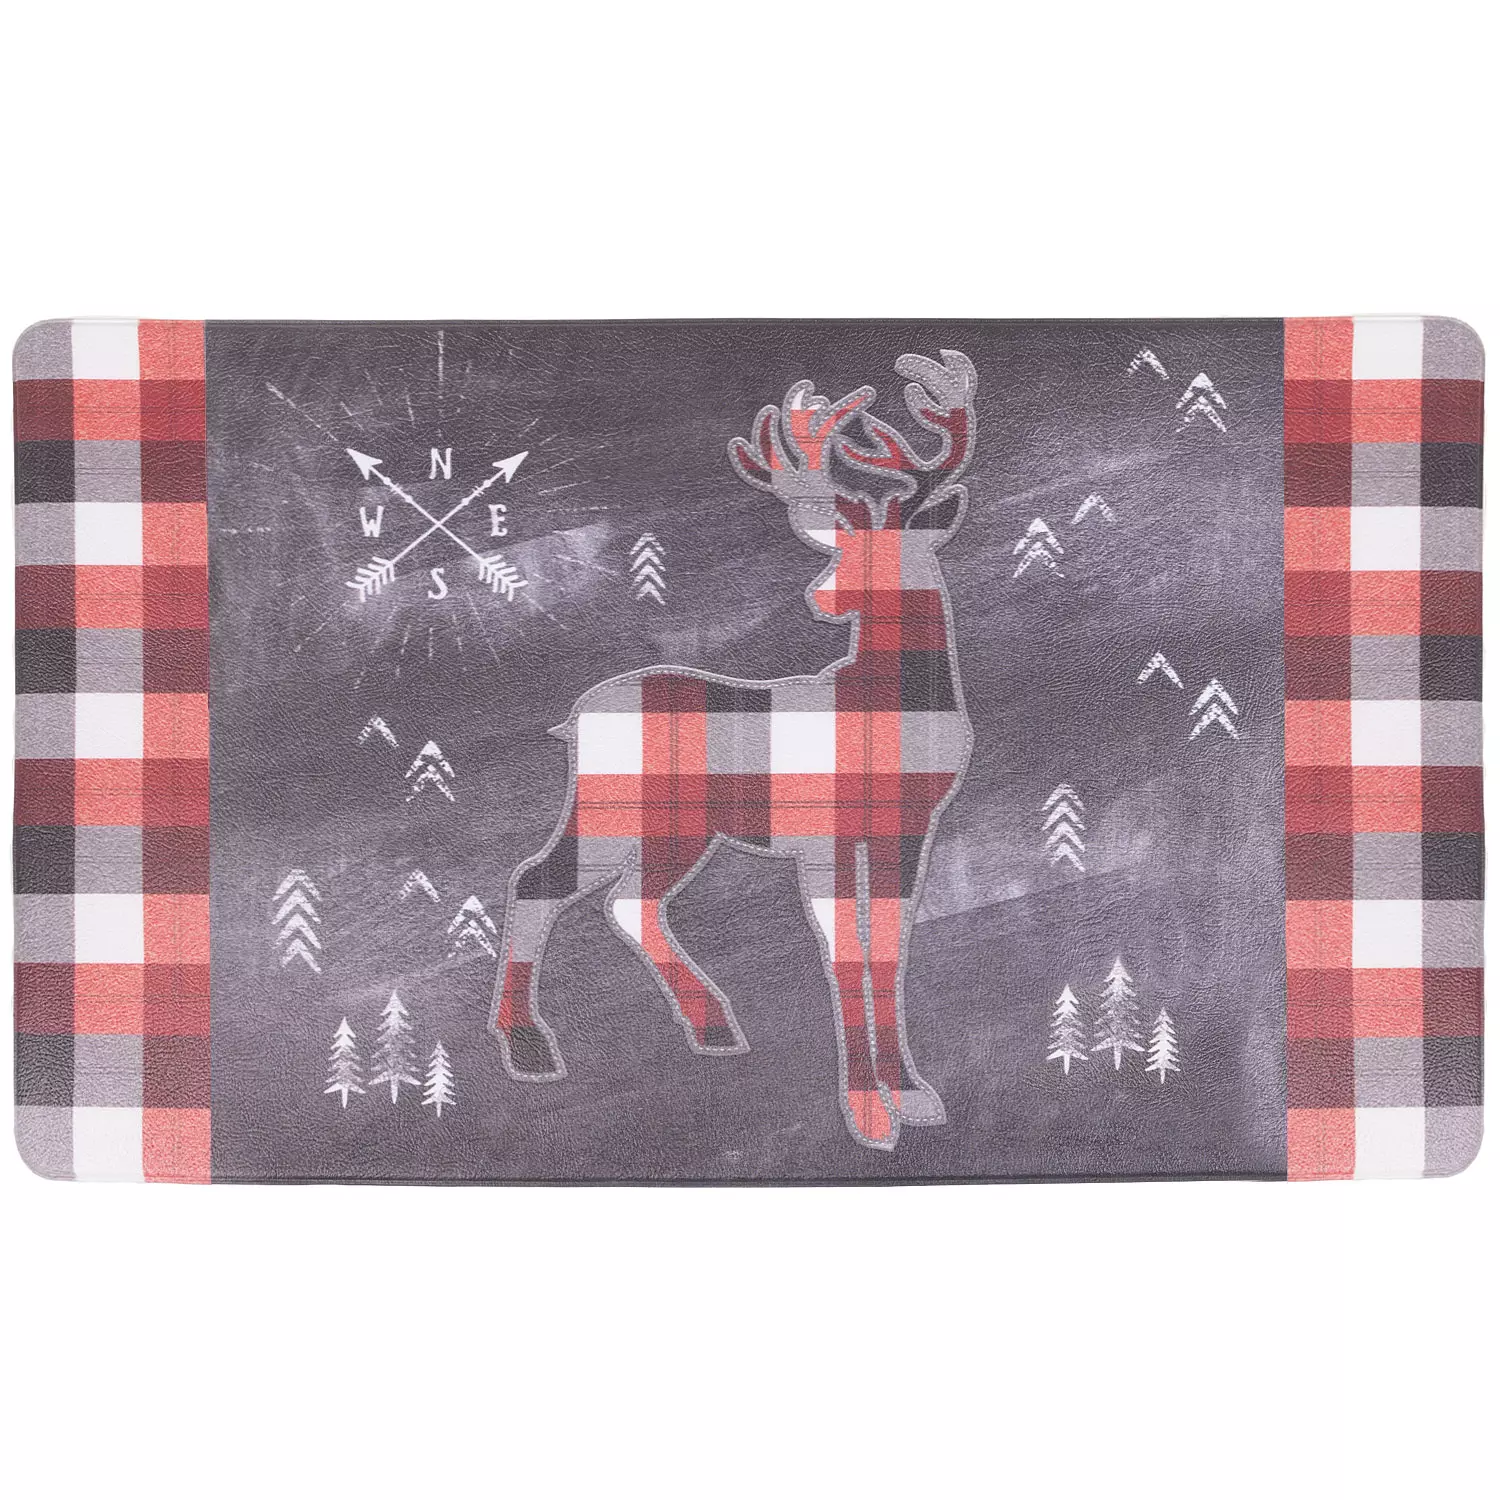 Foam floormat, plaid reindeer, 18"x30"